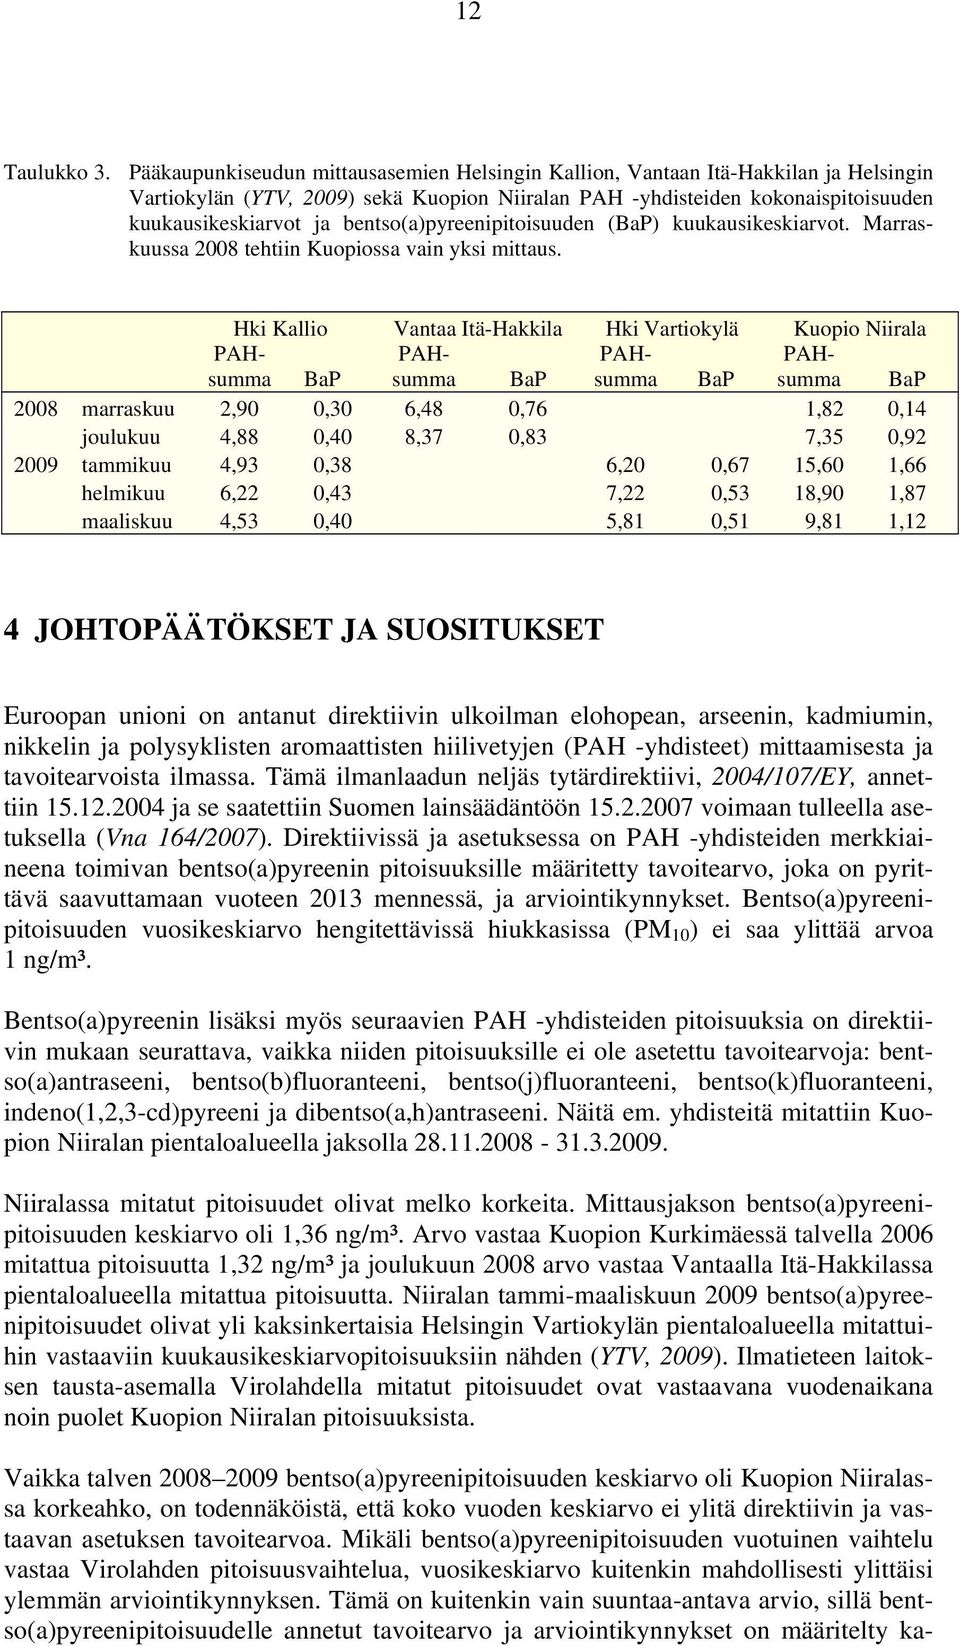 bentso(a)pyreenipitoisuuden (BaP) kuukausikeskiarvot. Marraskuussa 28 tehtiin Kuopiossa vain yksi mittaus.